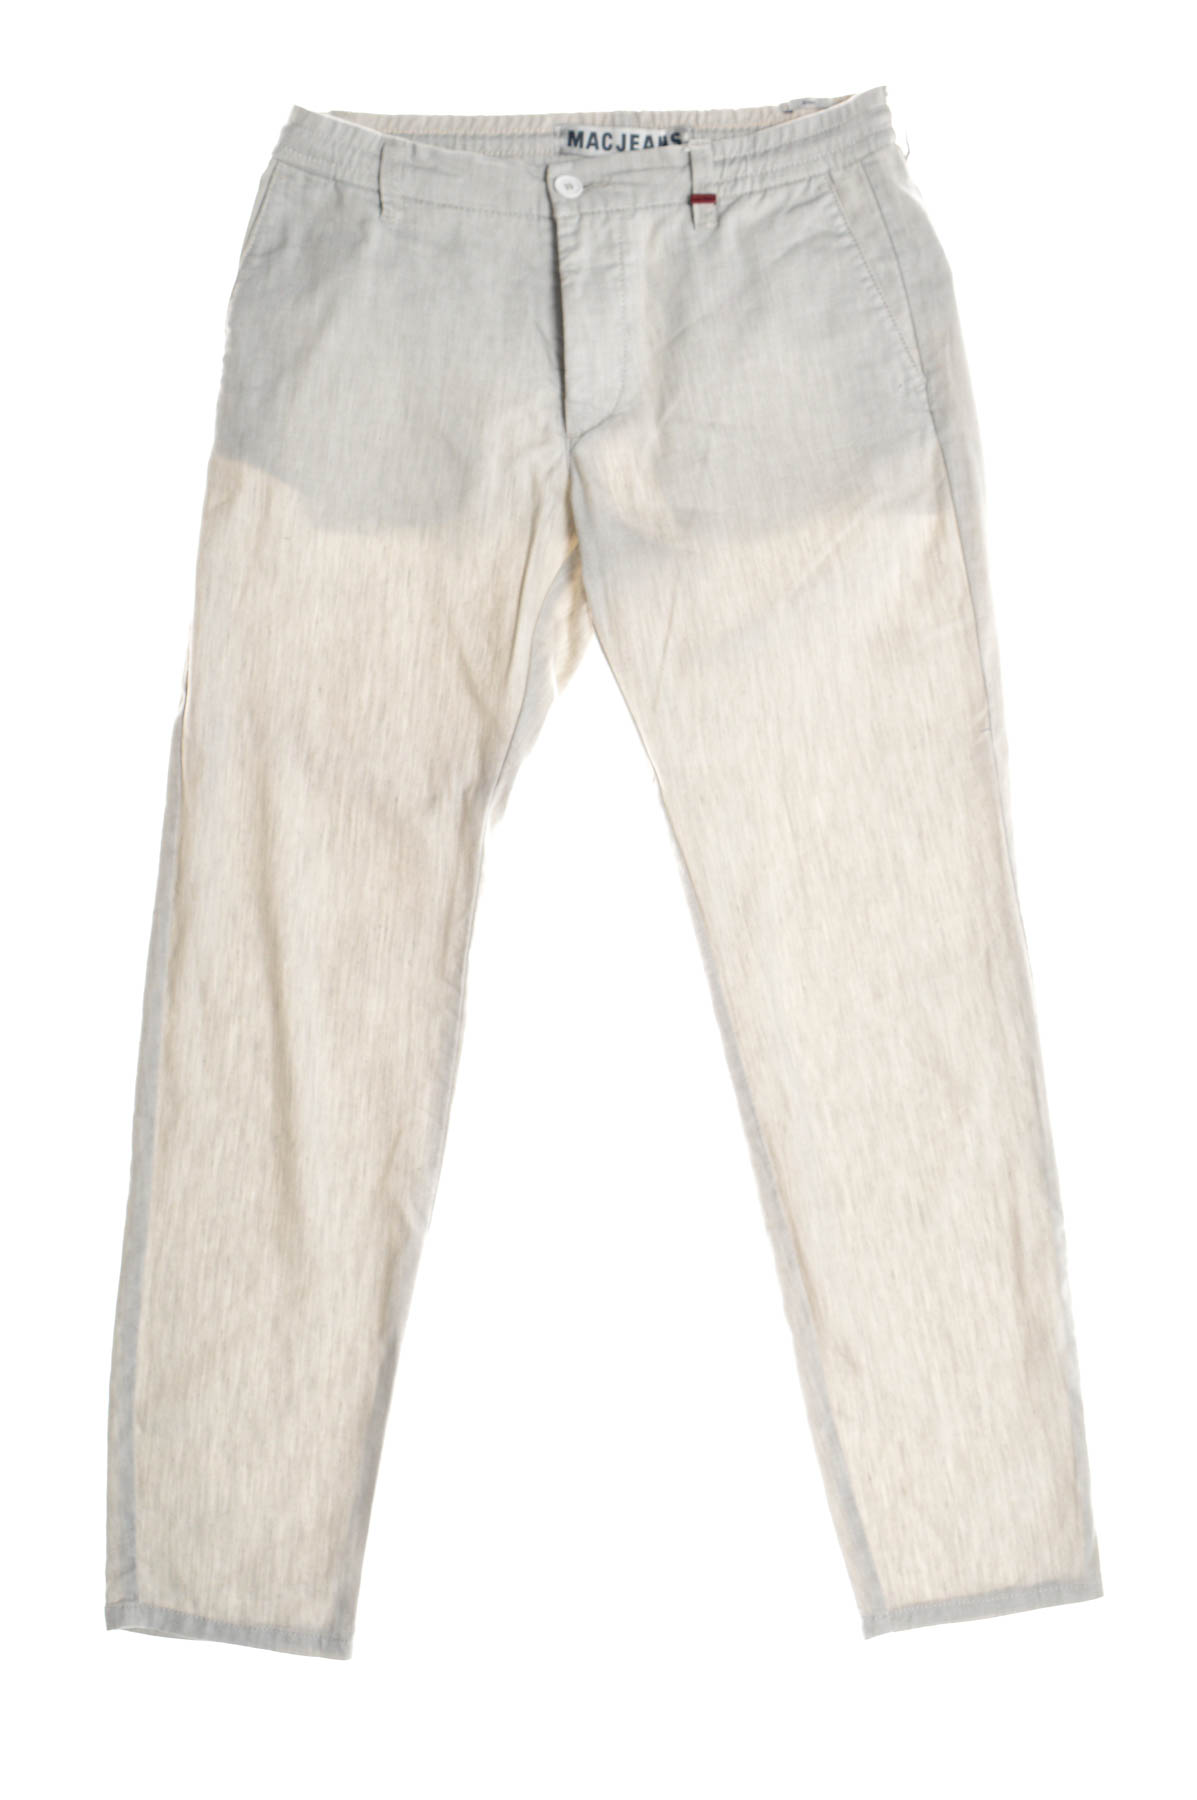 Pantalon pentru bărbați - MAC Jeans - 0